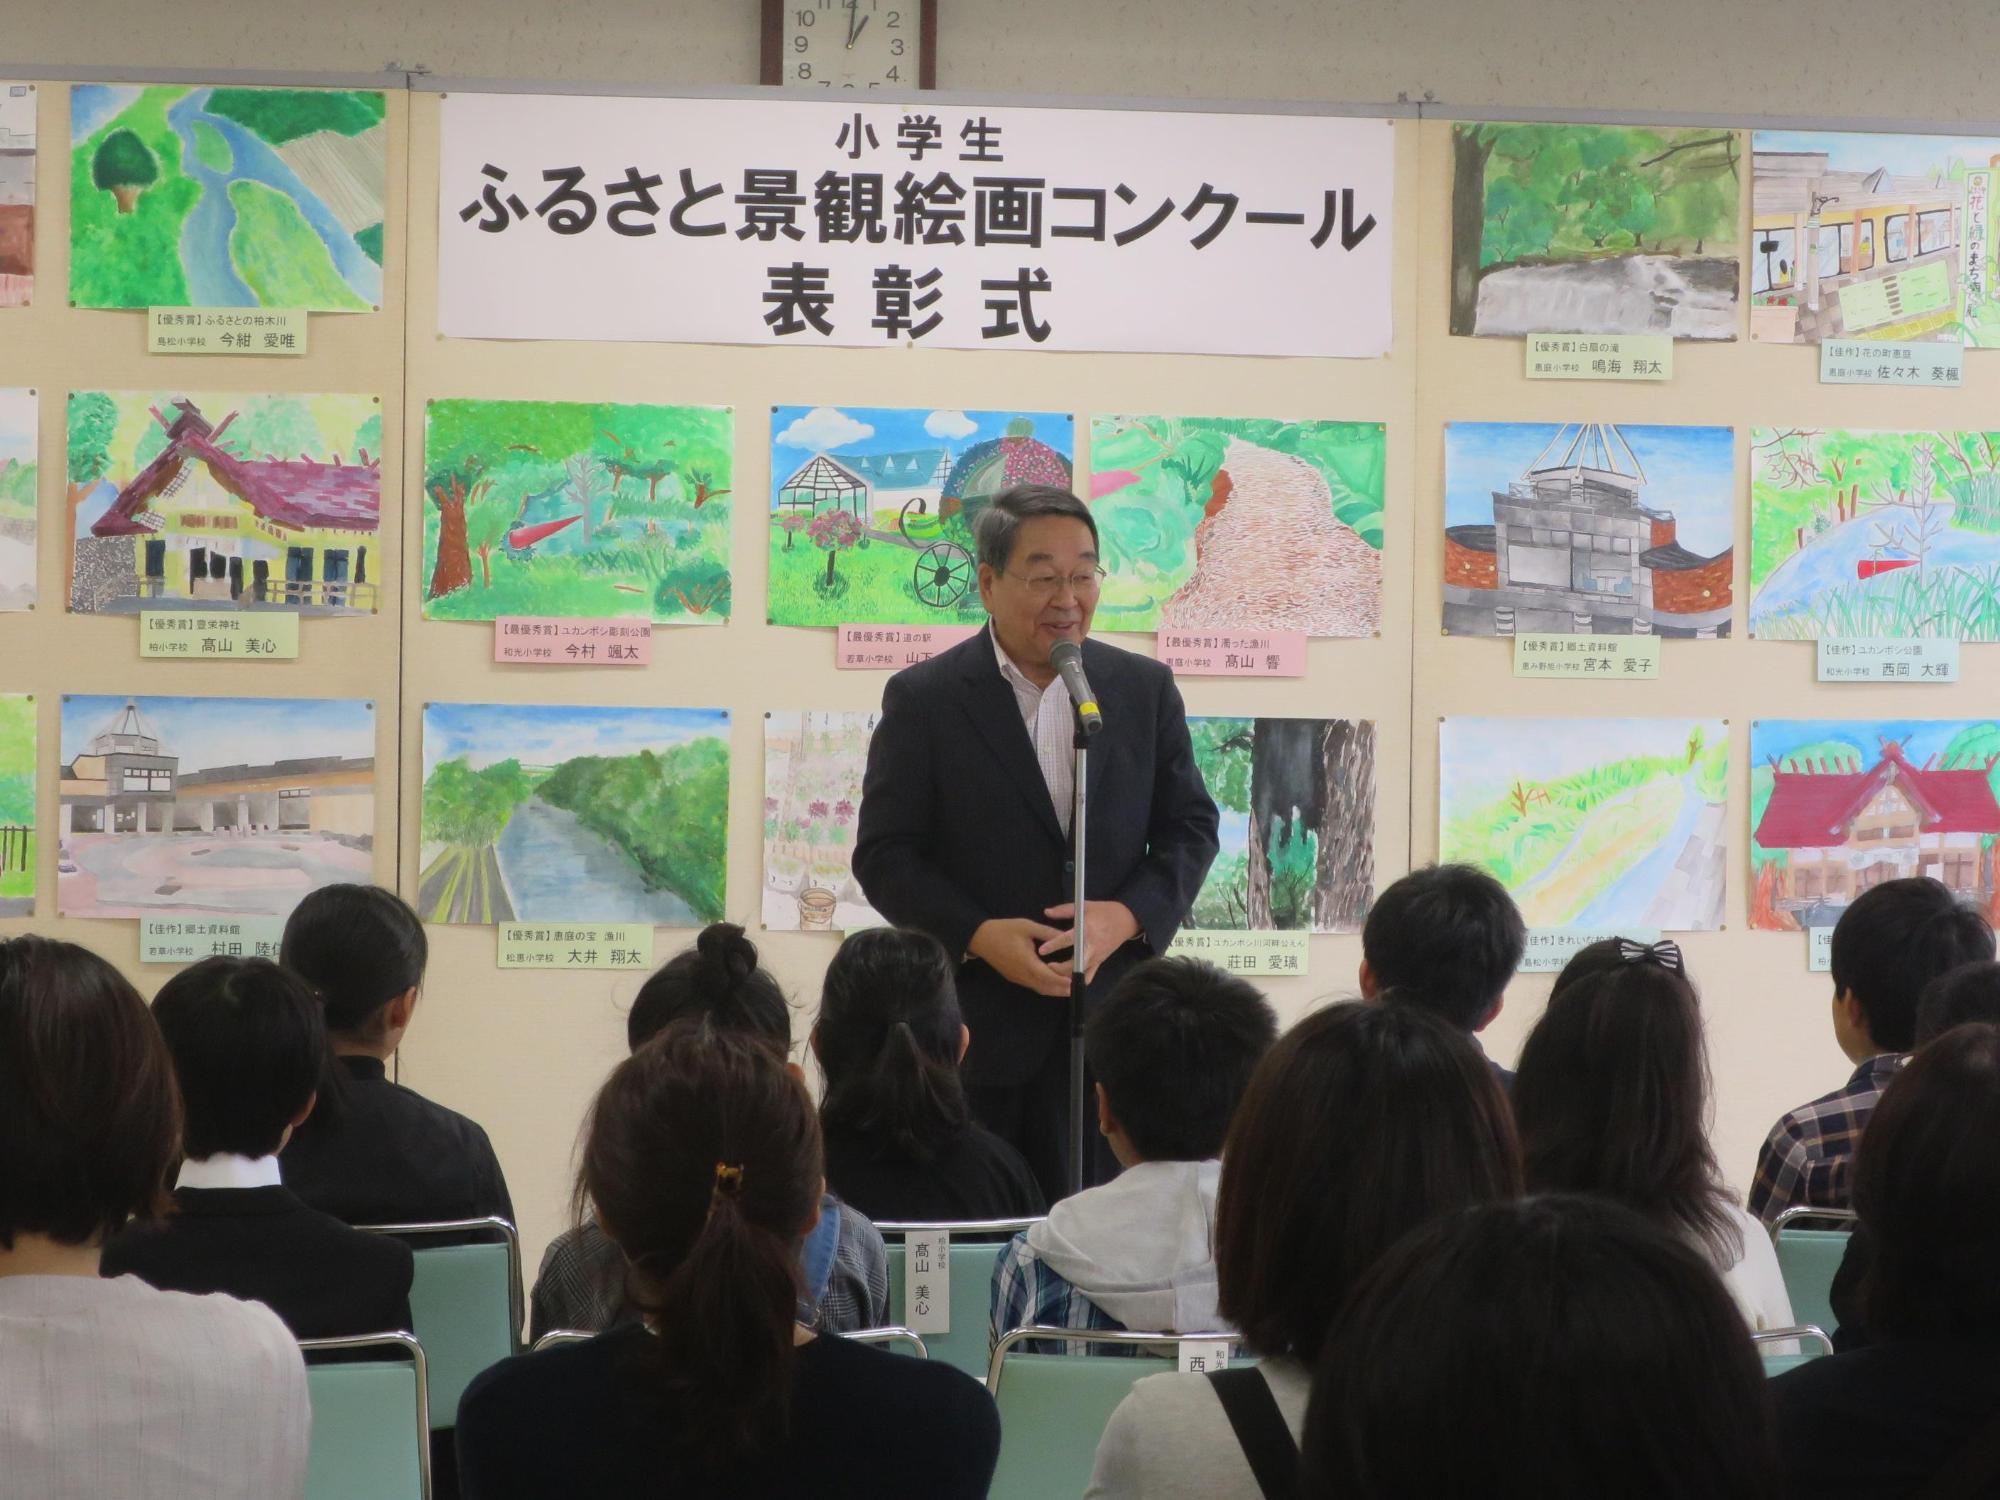 「第8回小学生ふるさと景観絵画コンクール表彰式」にて挨拶をしている原田市長の写真